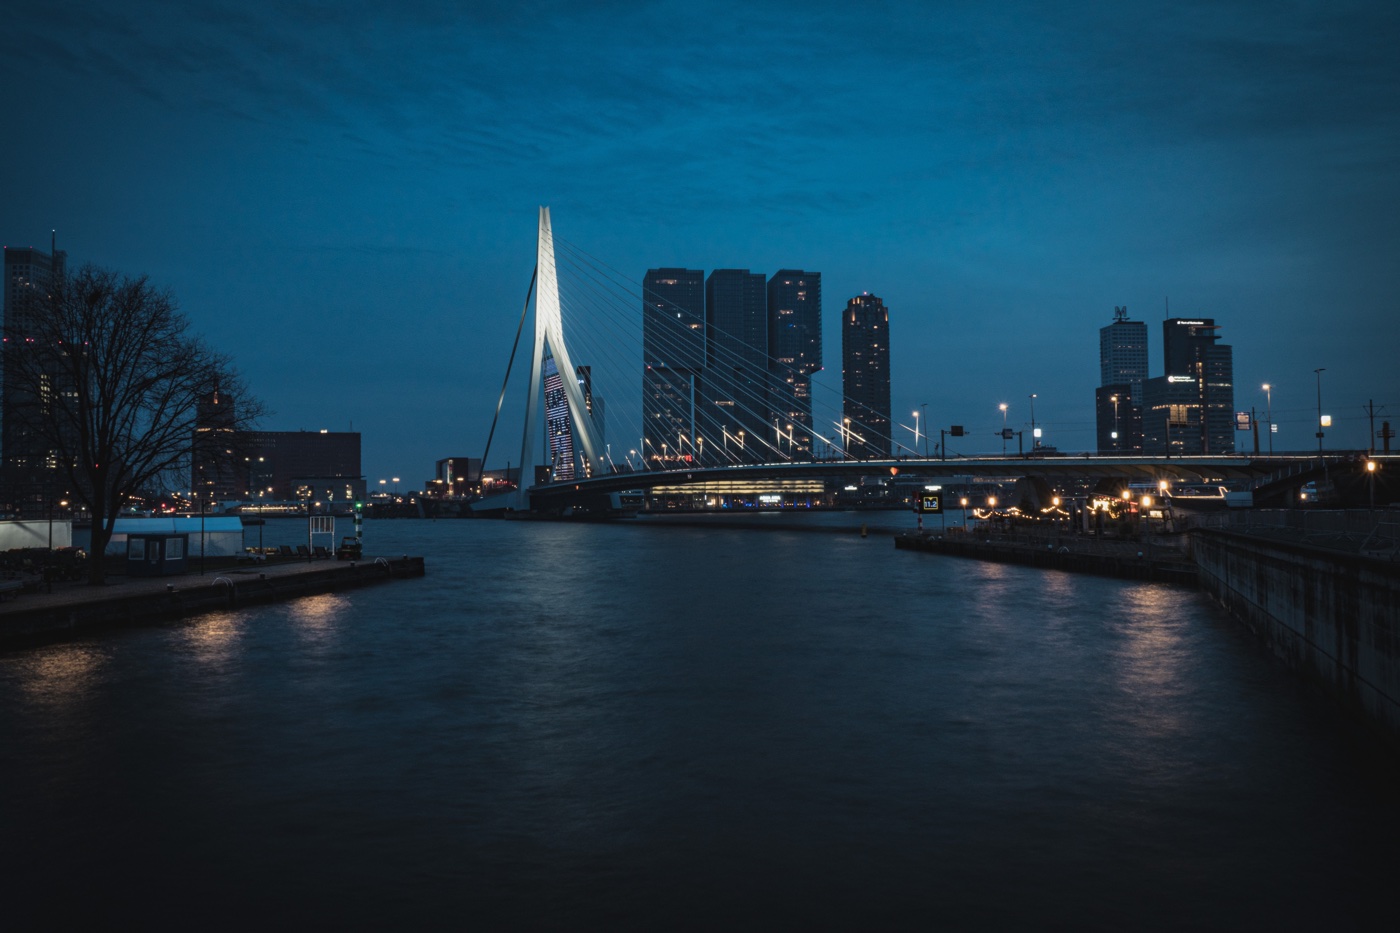 Rotterdam at night by Joël de Vriend